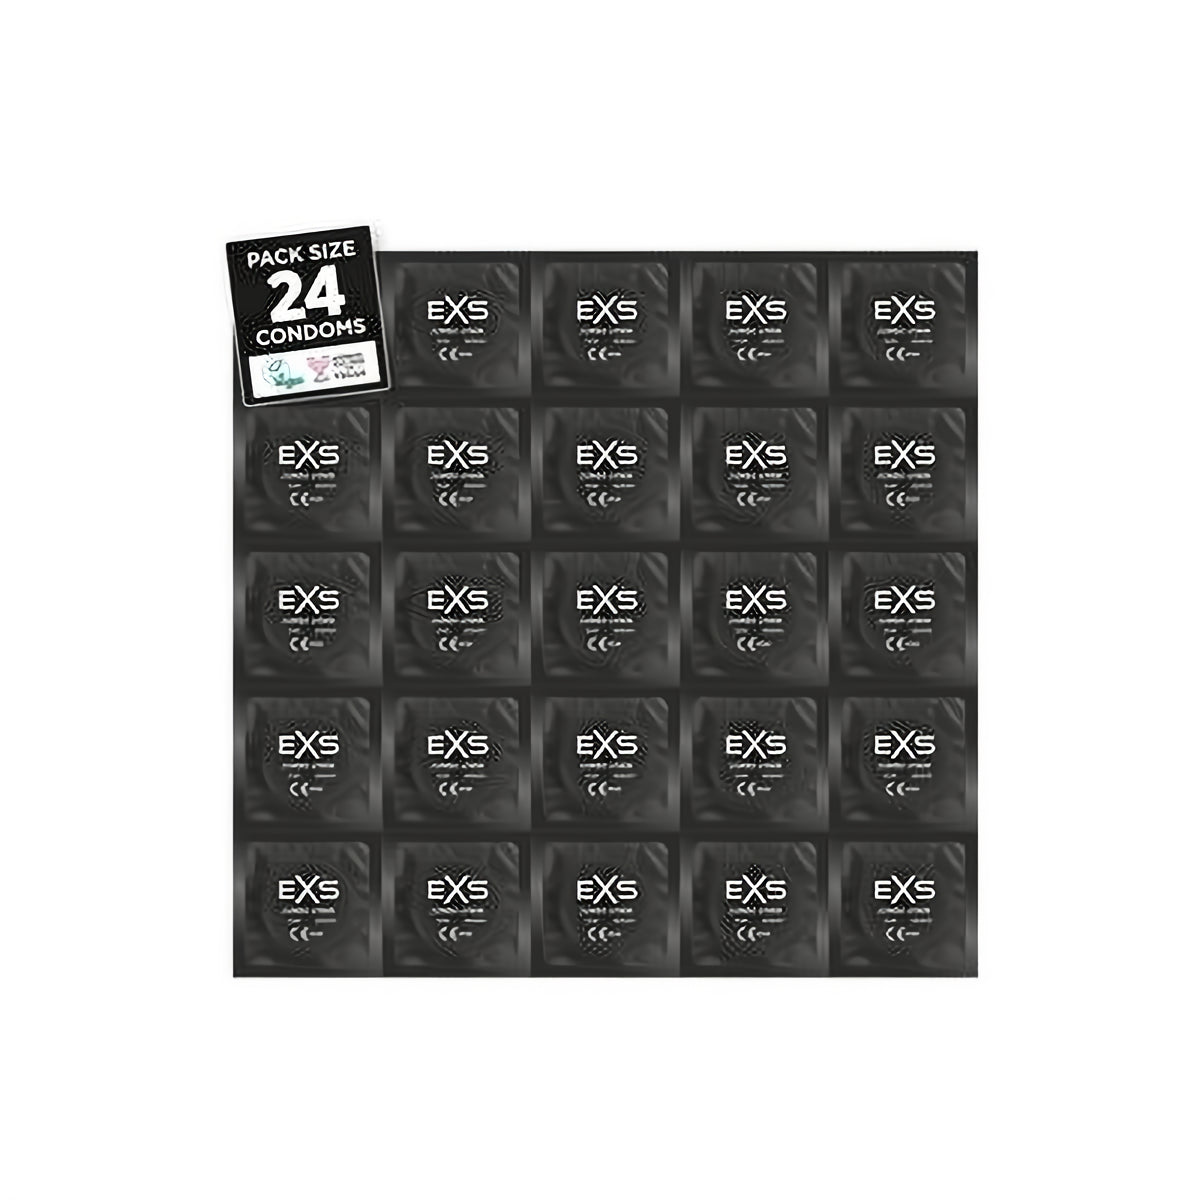 EXS Jumbo Pack - Condoms - 24 Pieces - EroticToyzProducten,Veilige Seks, Verzorging Hulp,Veilige Seks,Condooms voor Mannen,,MannelijkEXS